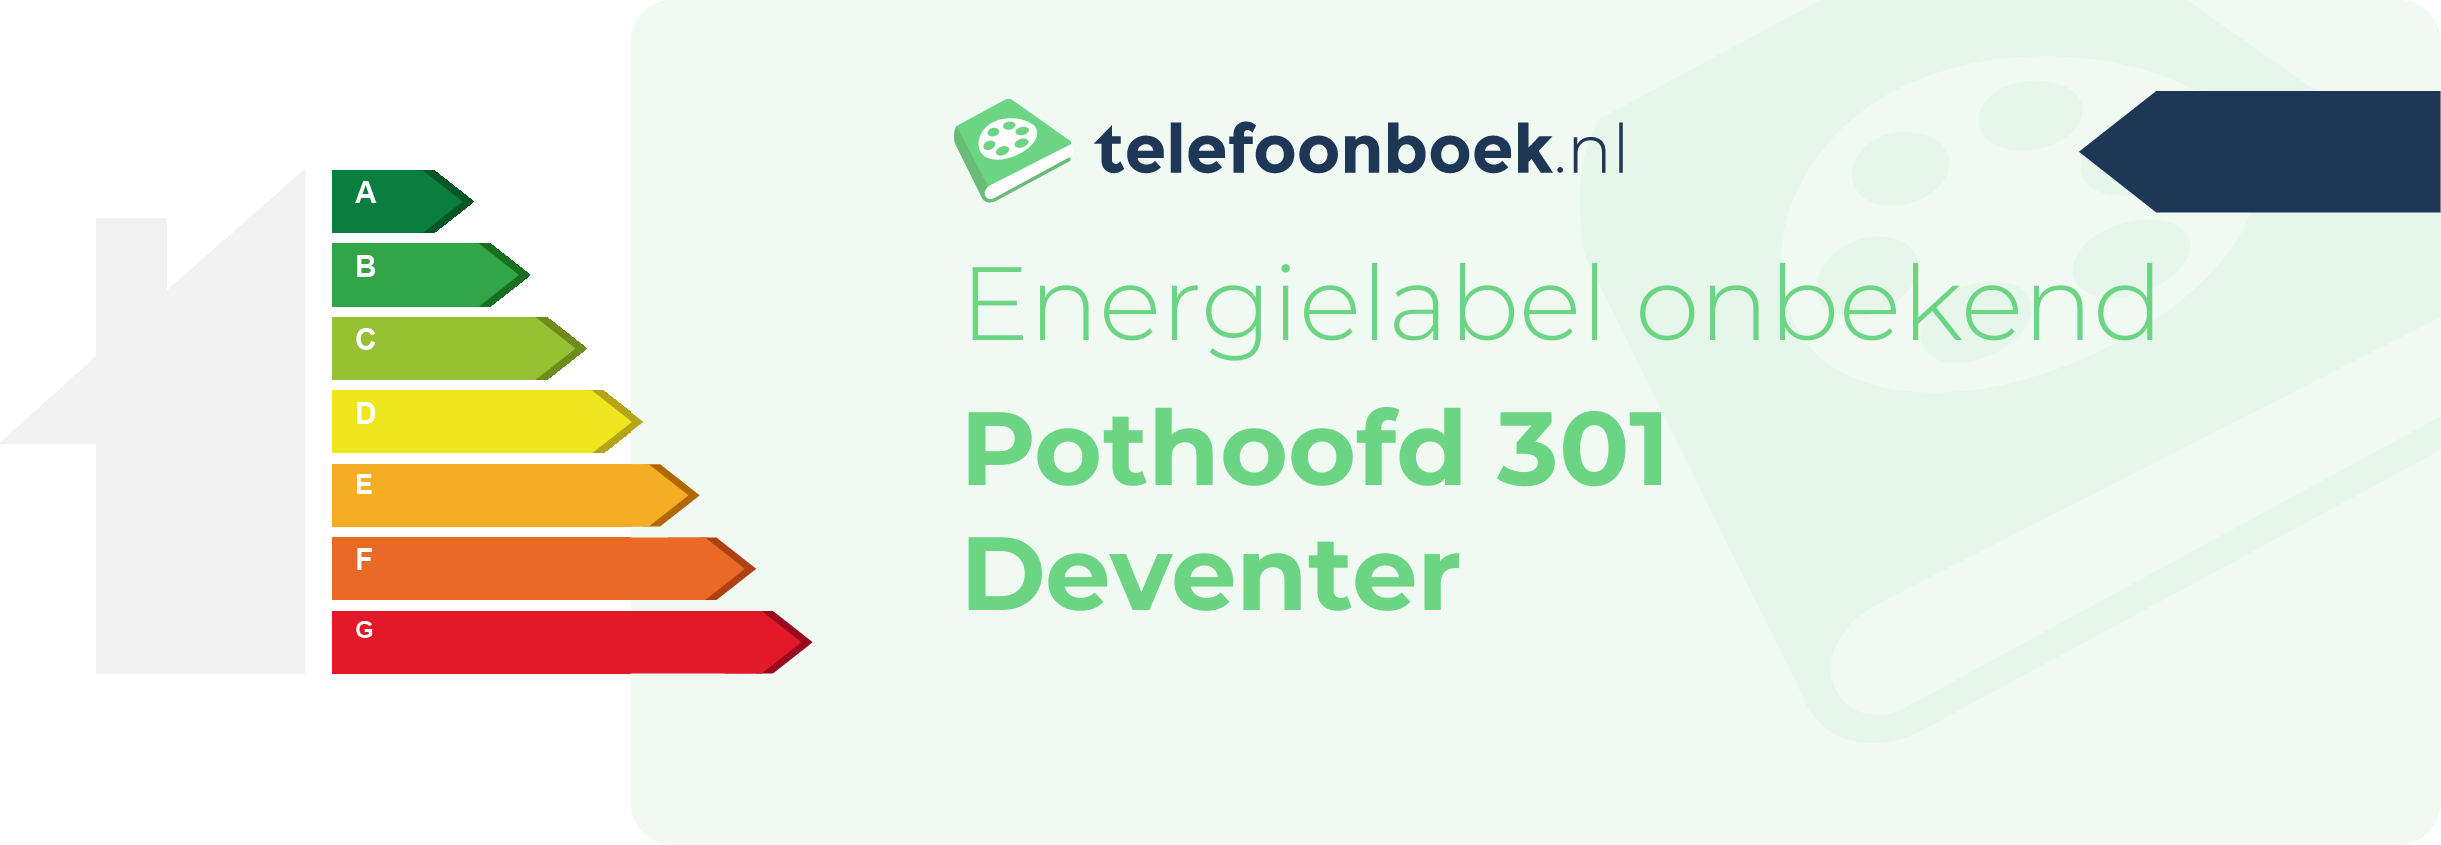 Energielabel Pothoofd 301 Deventer